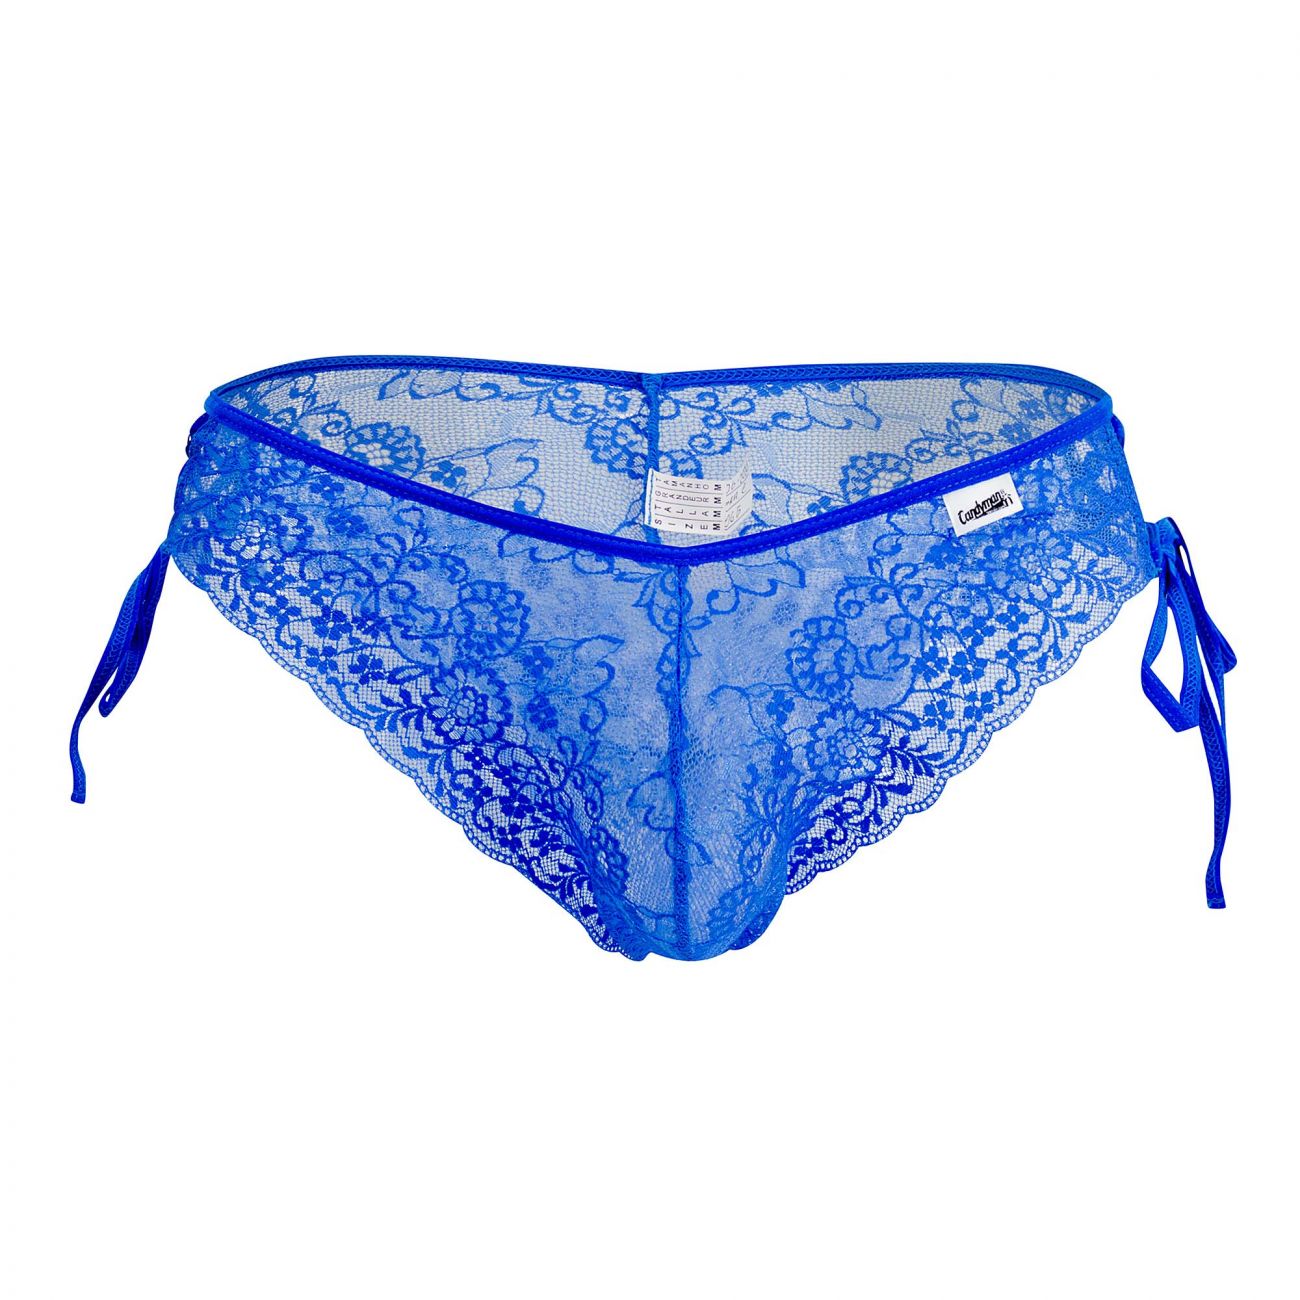 JCSTK - CandyMan 99488 Side Tie Lace Bikini Royal Blue